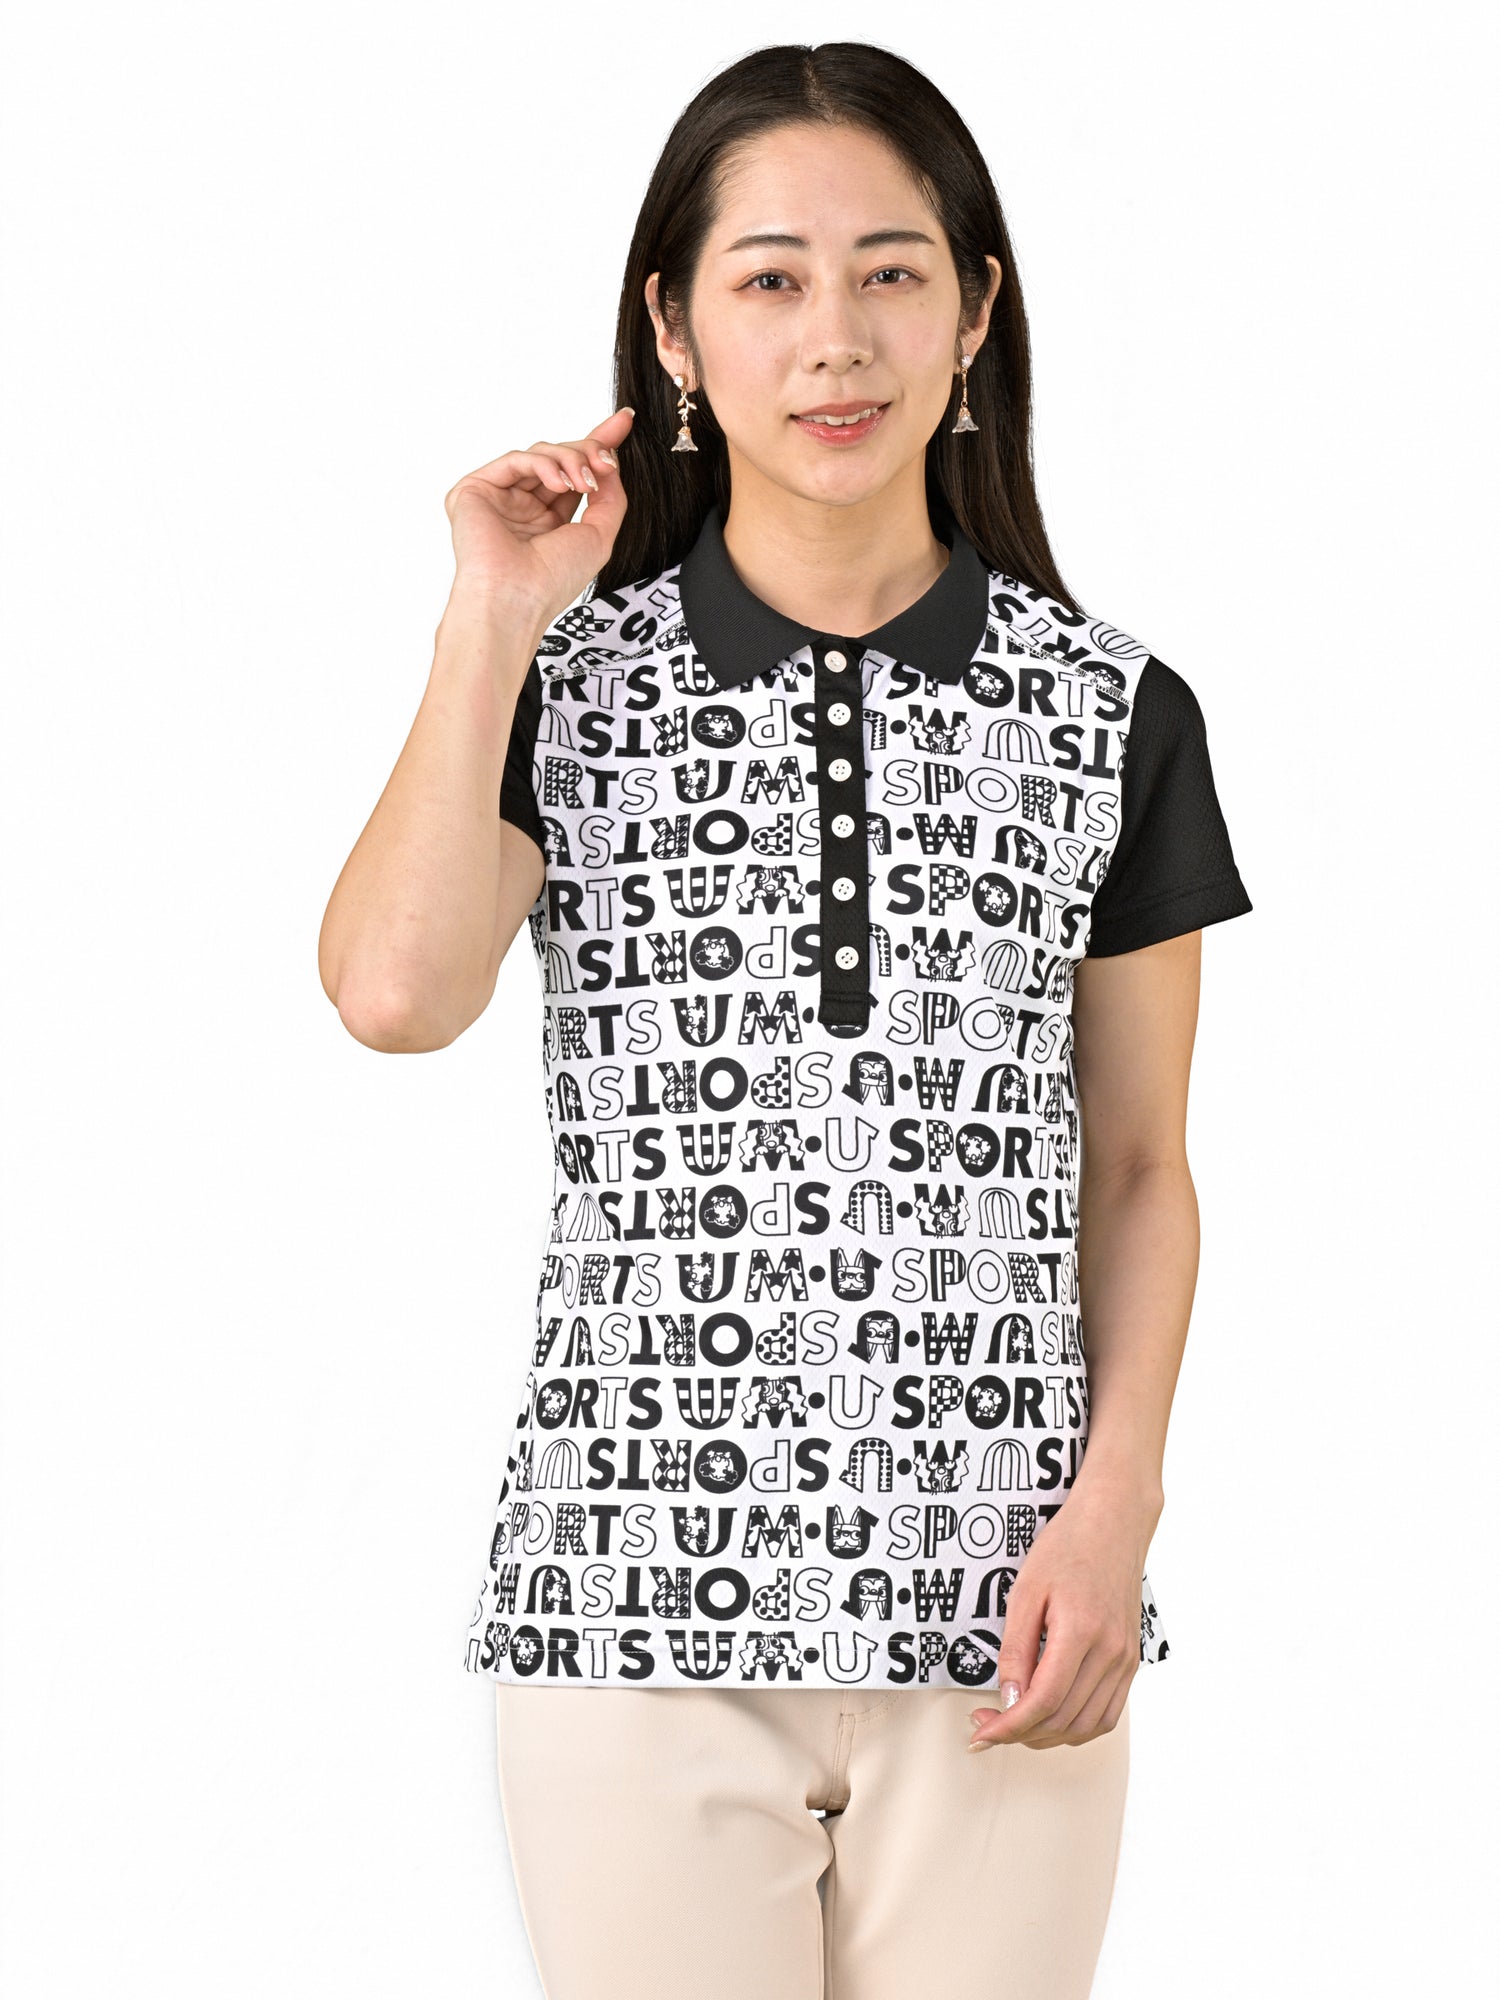 標誌全印花半袖職業襯衫 (701J6006)